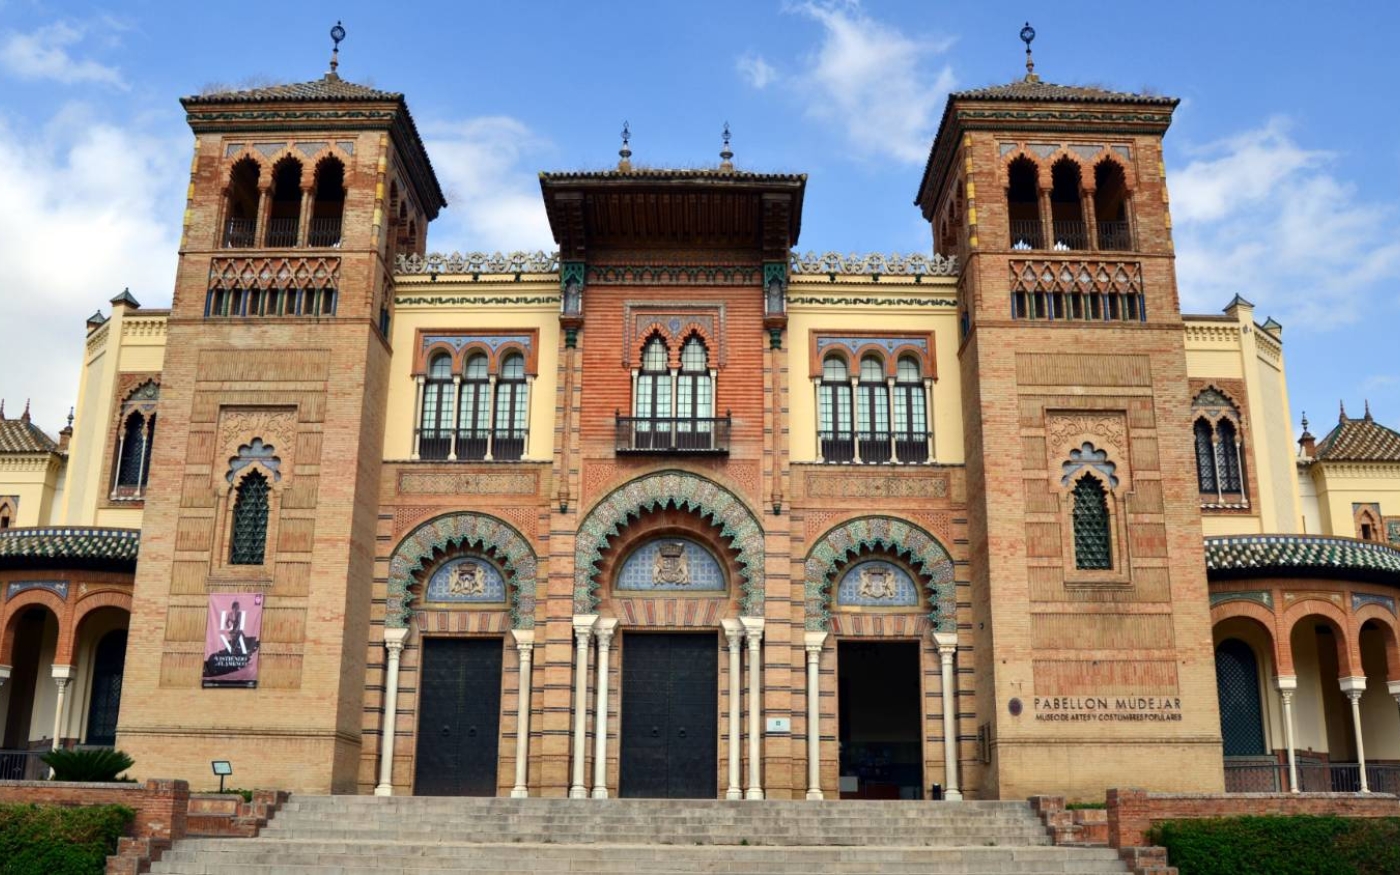 Le Musée des arts et traditions populaires de Séville est construit selon le style architectural mudéjar (Emilio J. Rodríguez Posada)